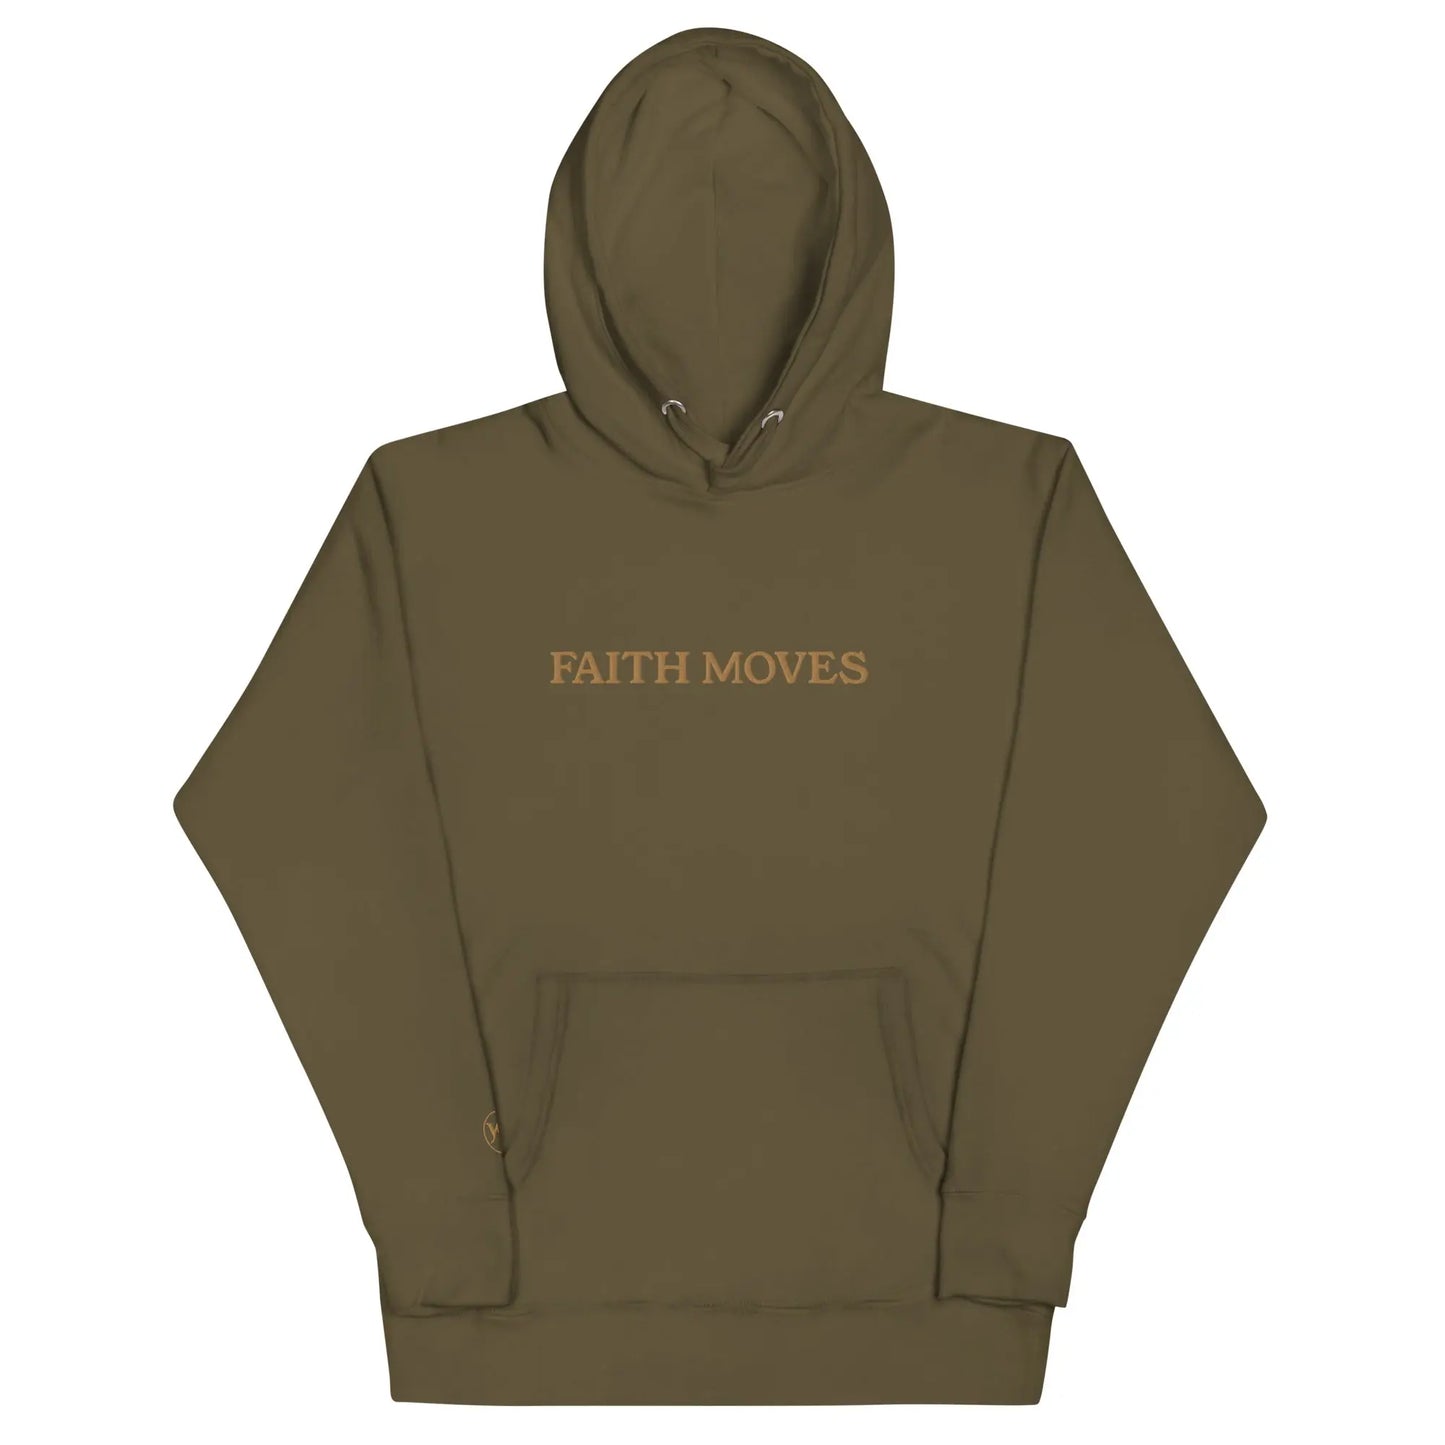 premium faith moves hoodie